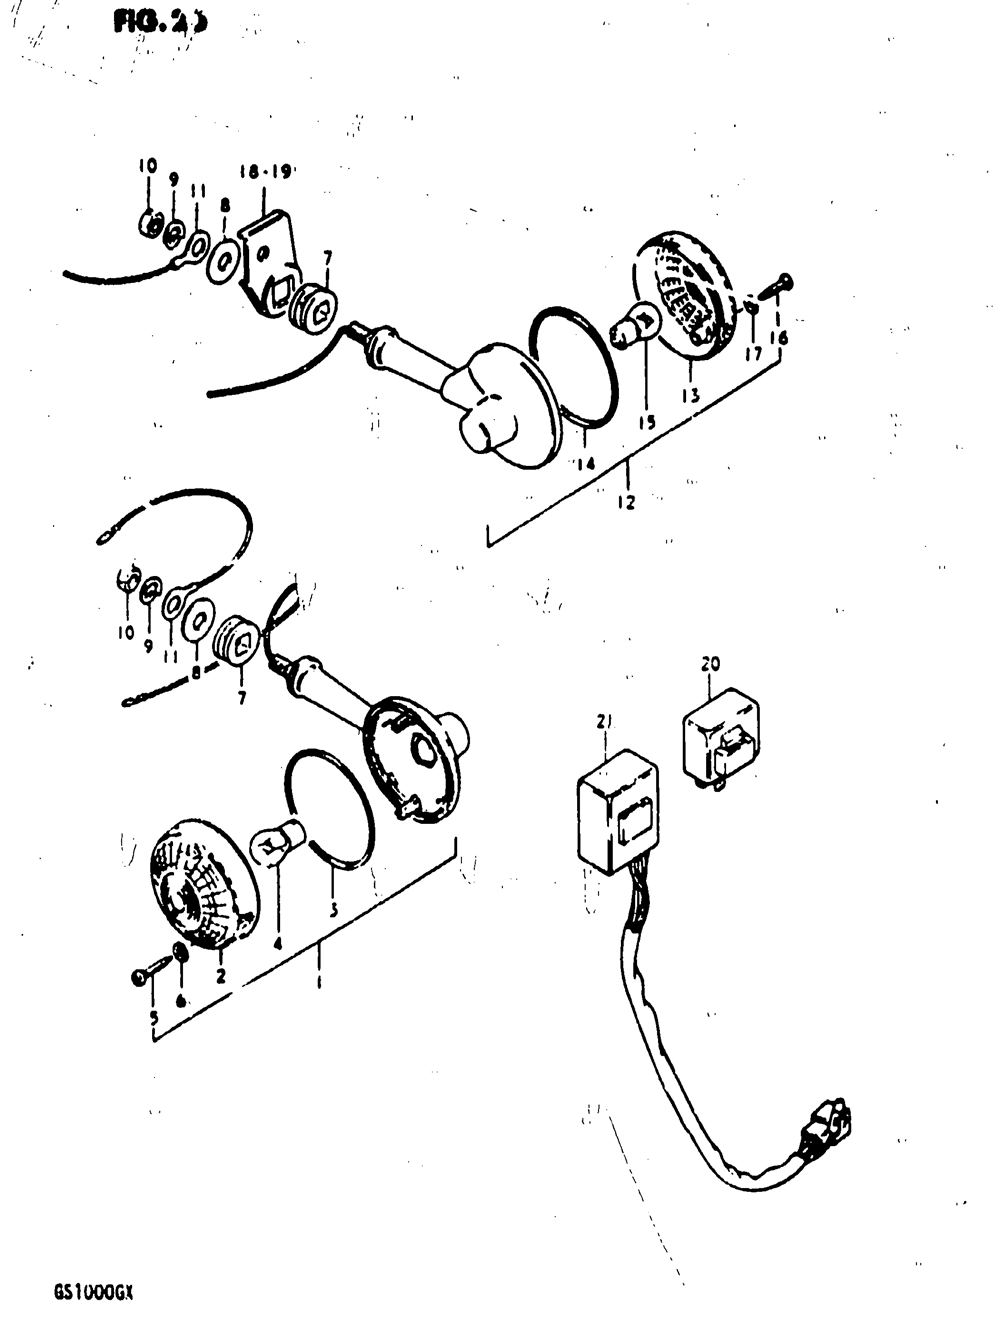 Turn signal lamp (gs1000gt)